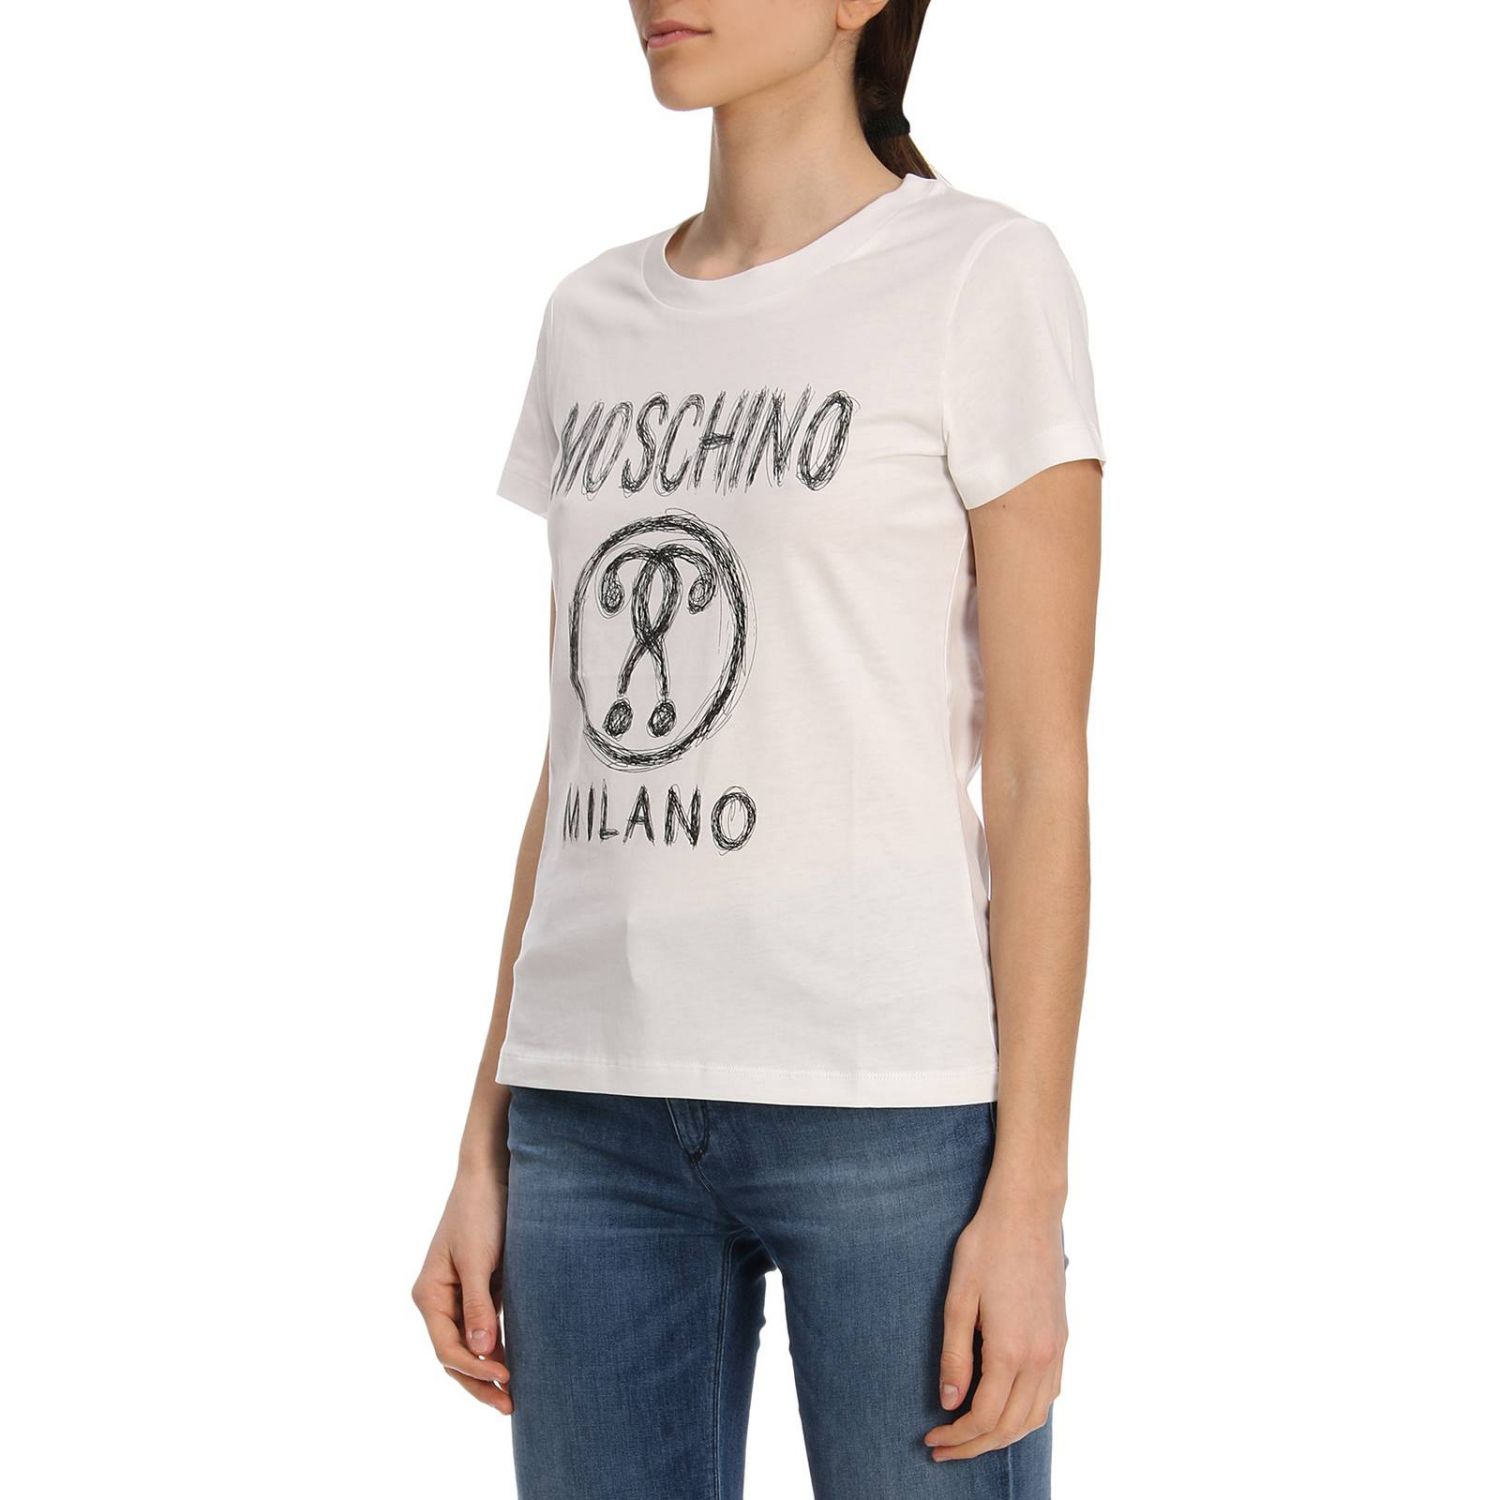 Moschino Couture Outlet: T-shirt women | T-Shirt Moschino Couture Women ...